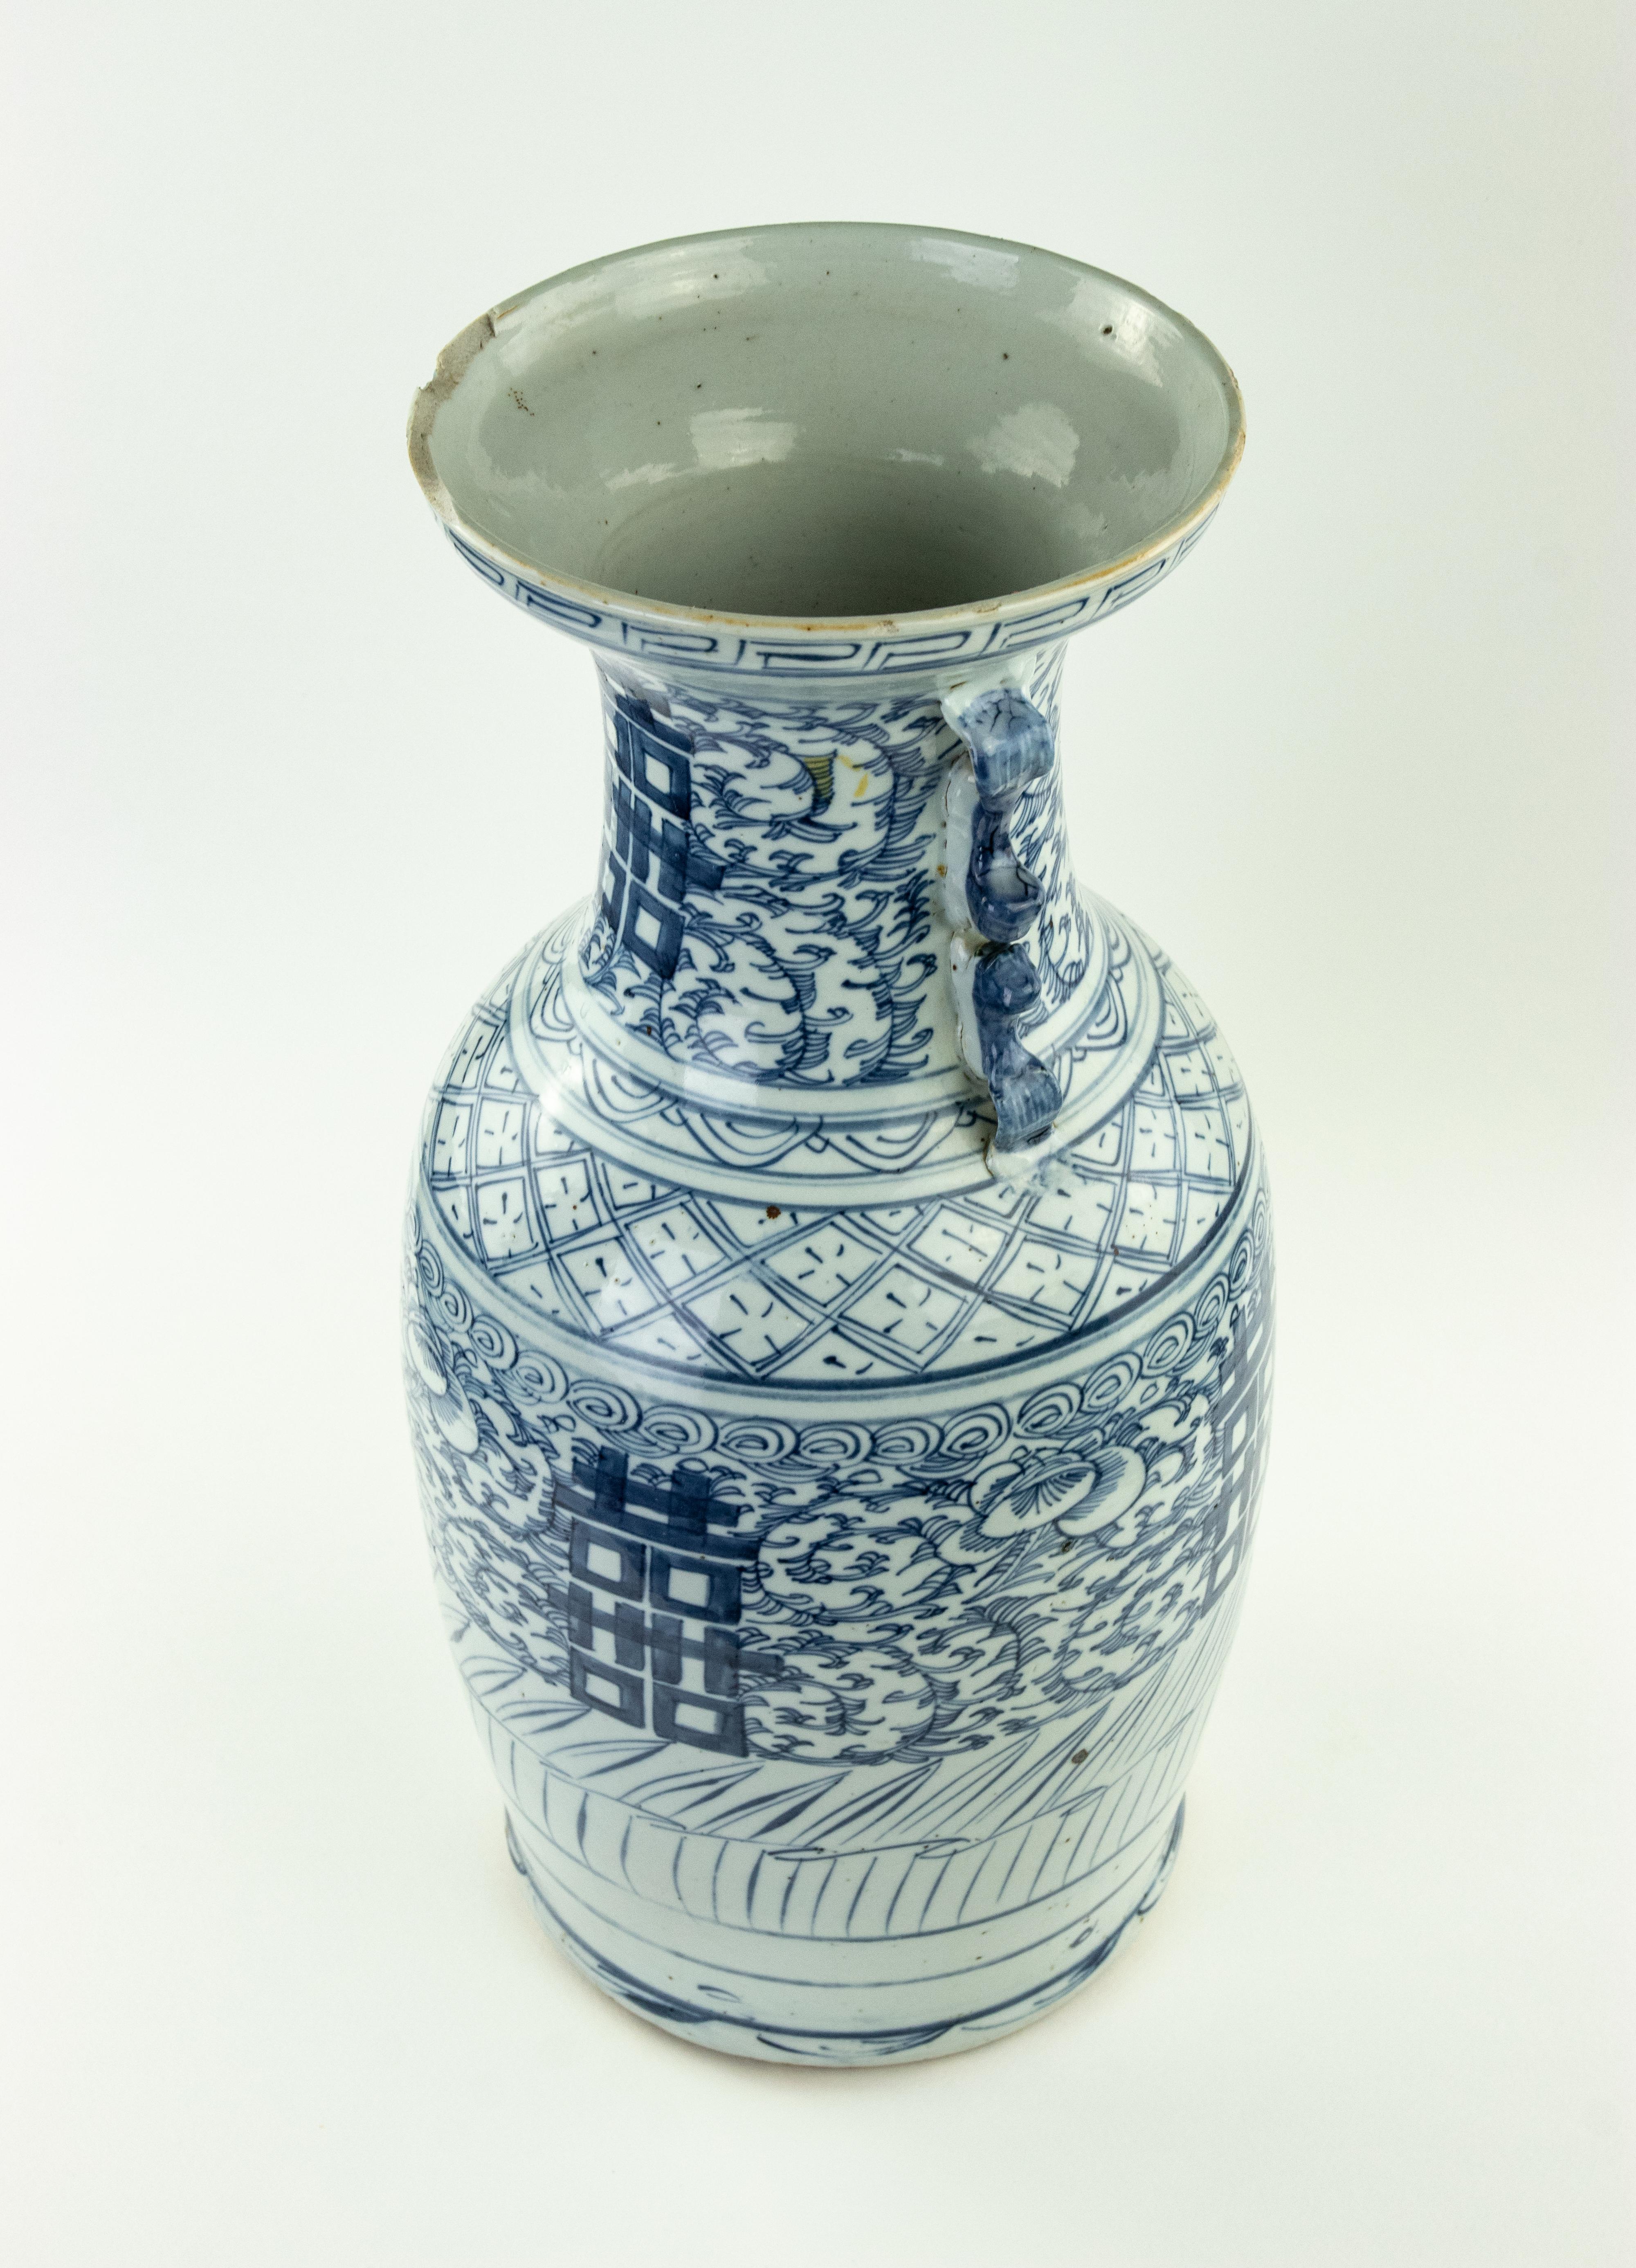 Vase vintage en porcelaine, Chine début 20ème siècle

Peint en bleu sous glaçure avec des bandes d'idéogrammes représentant le bonheur conjugal sur un fond de pivoines stylisées.Poignées avec des paires de chiens Fo.

43,5 x 18 cm.

En bon état, à